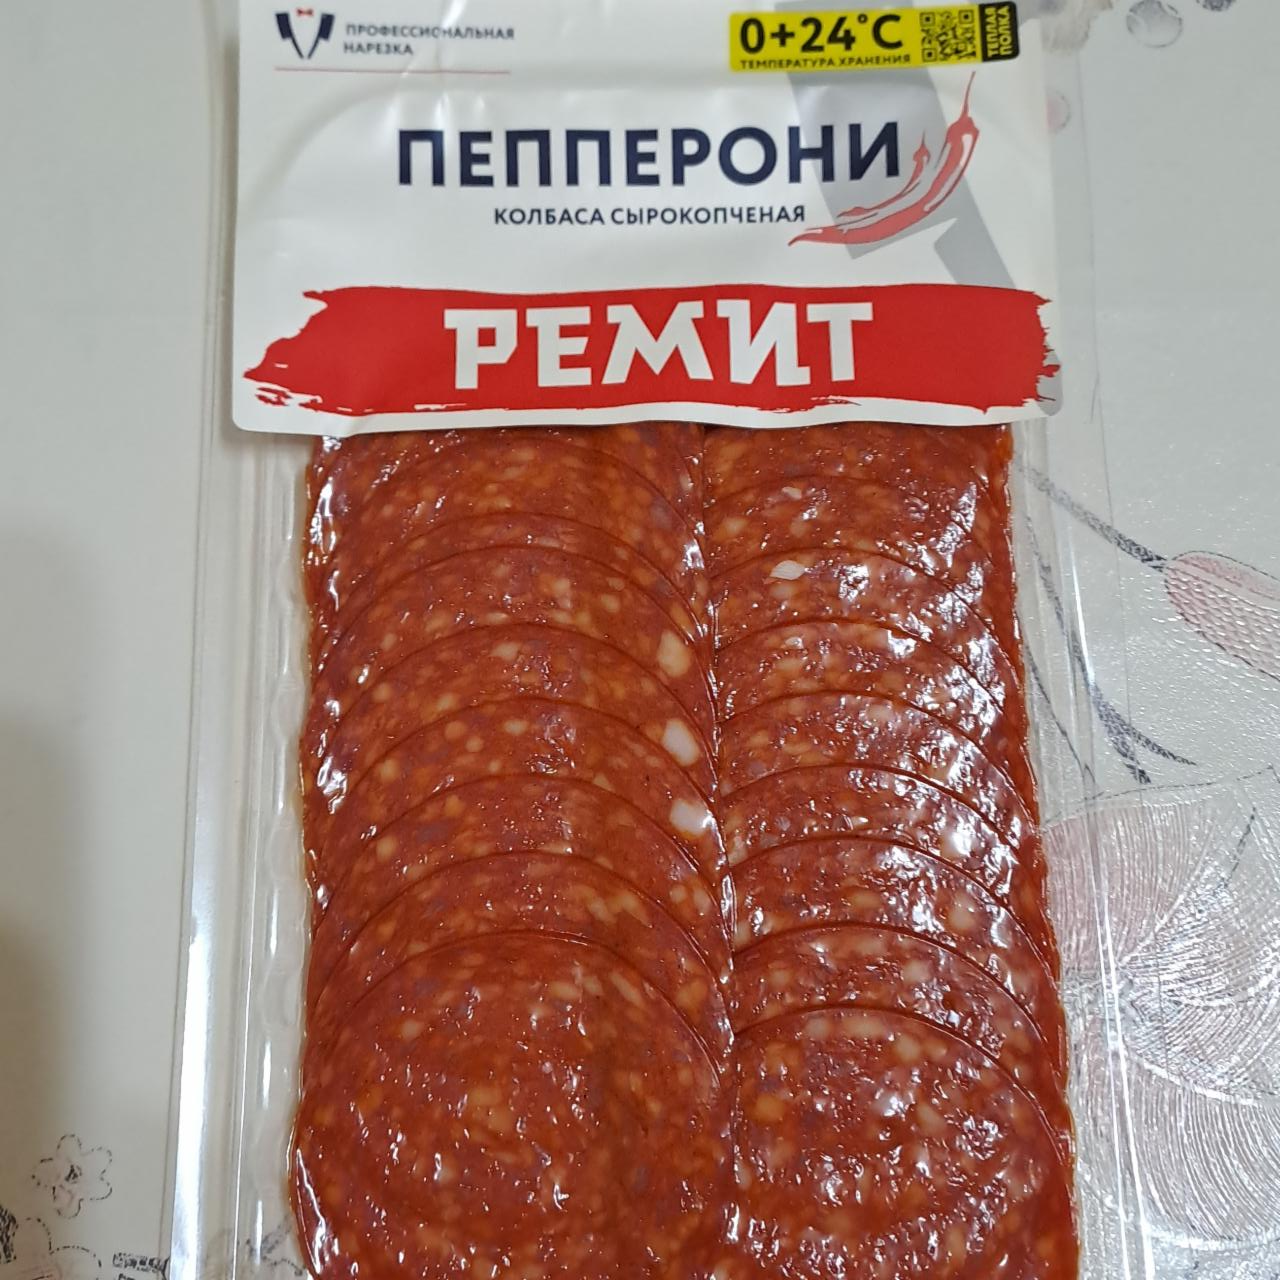 Фото - Пепперони колбаса сырокопченая Ремит